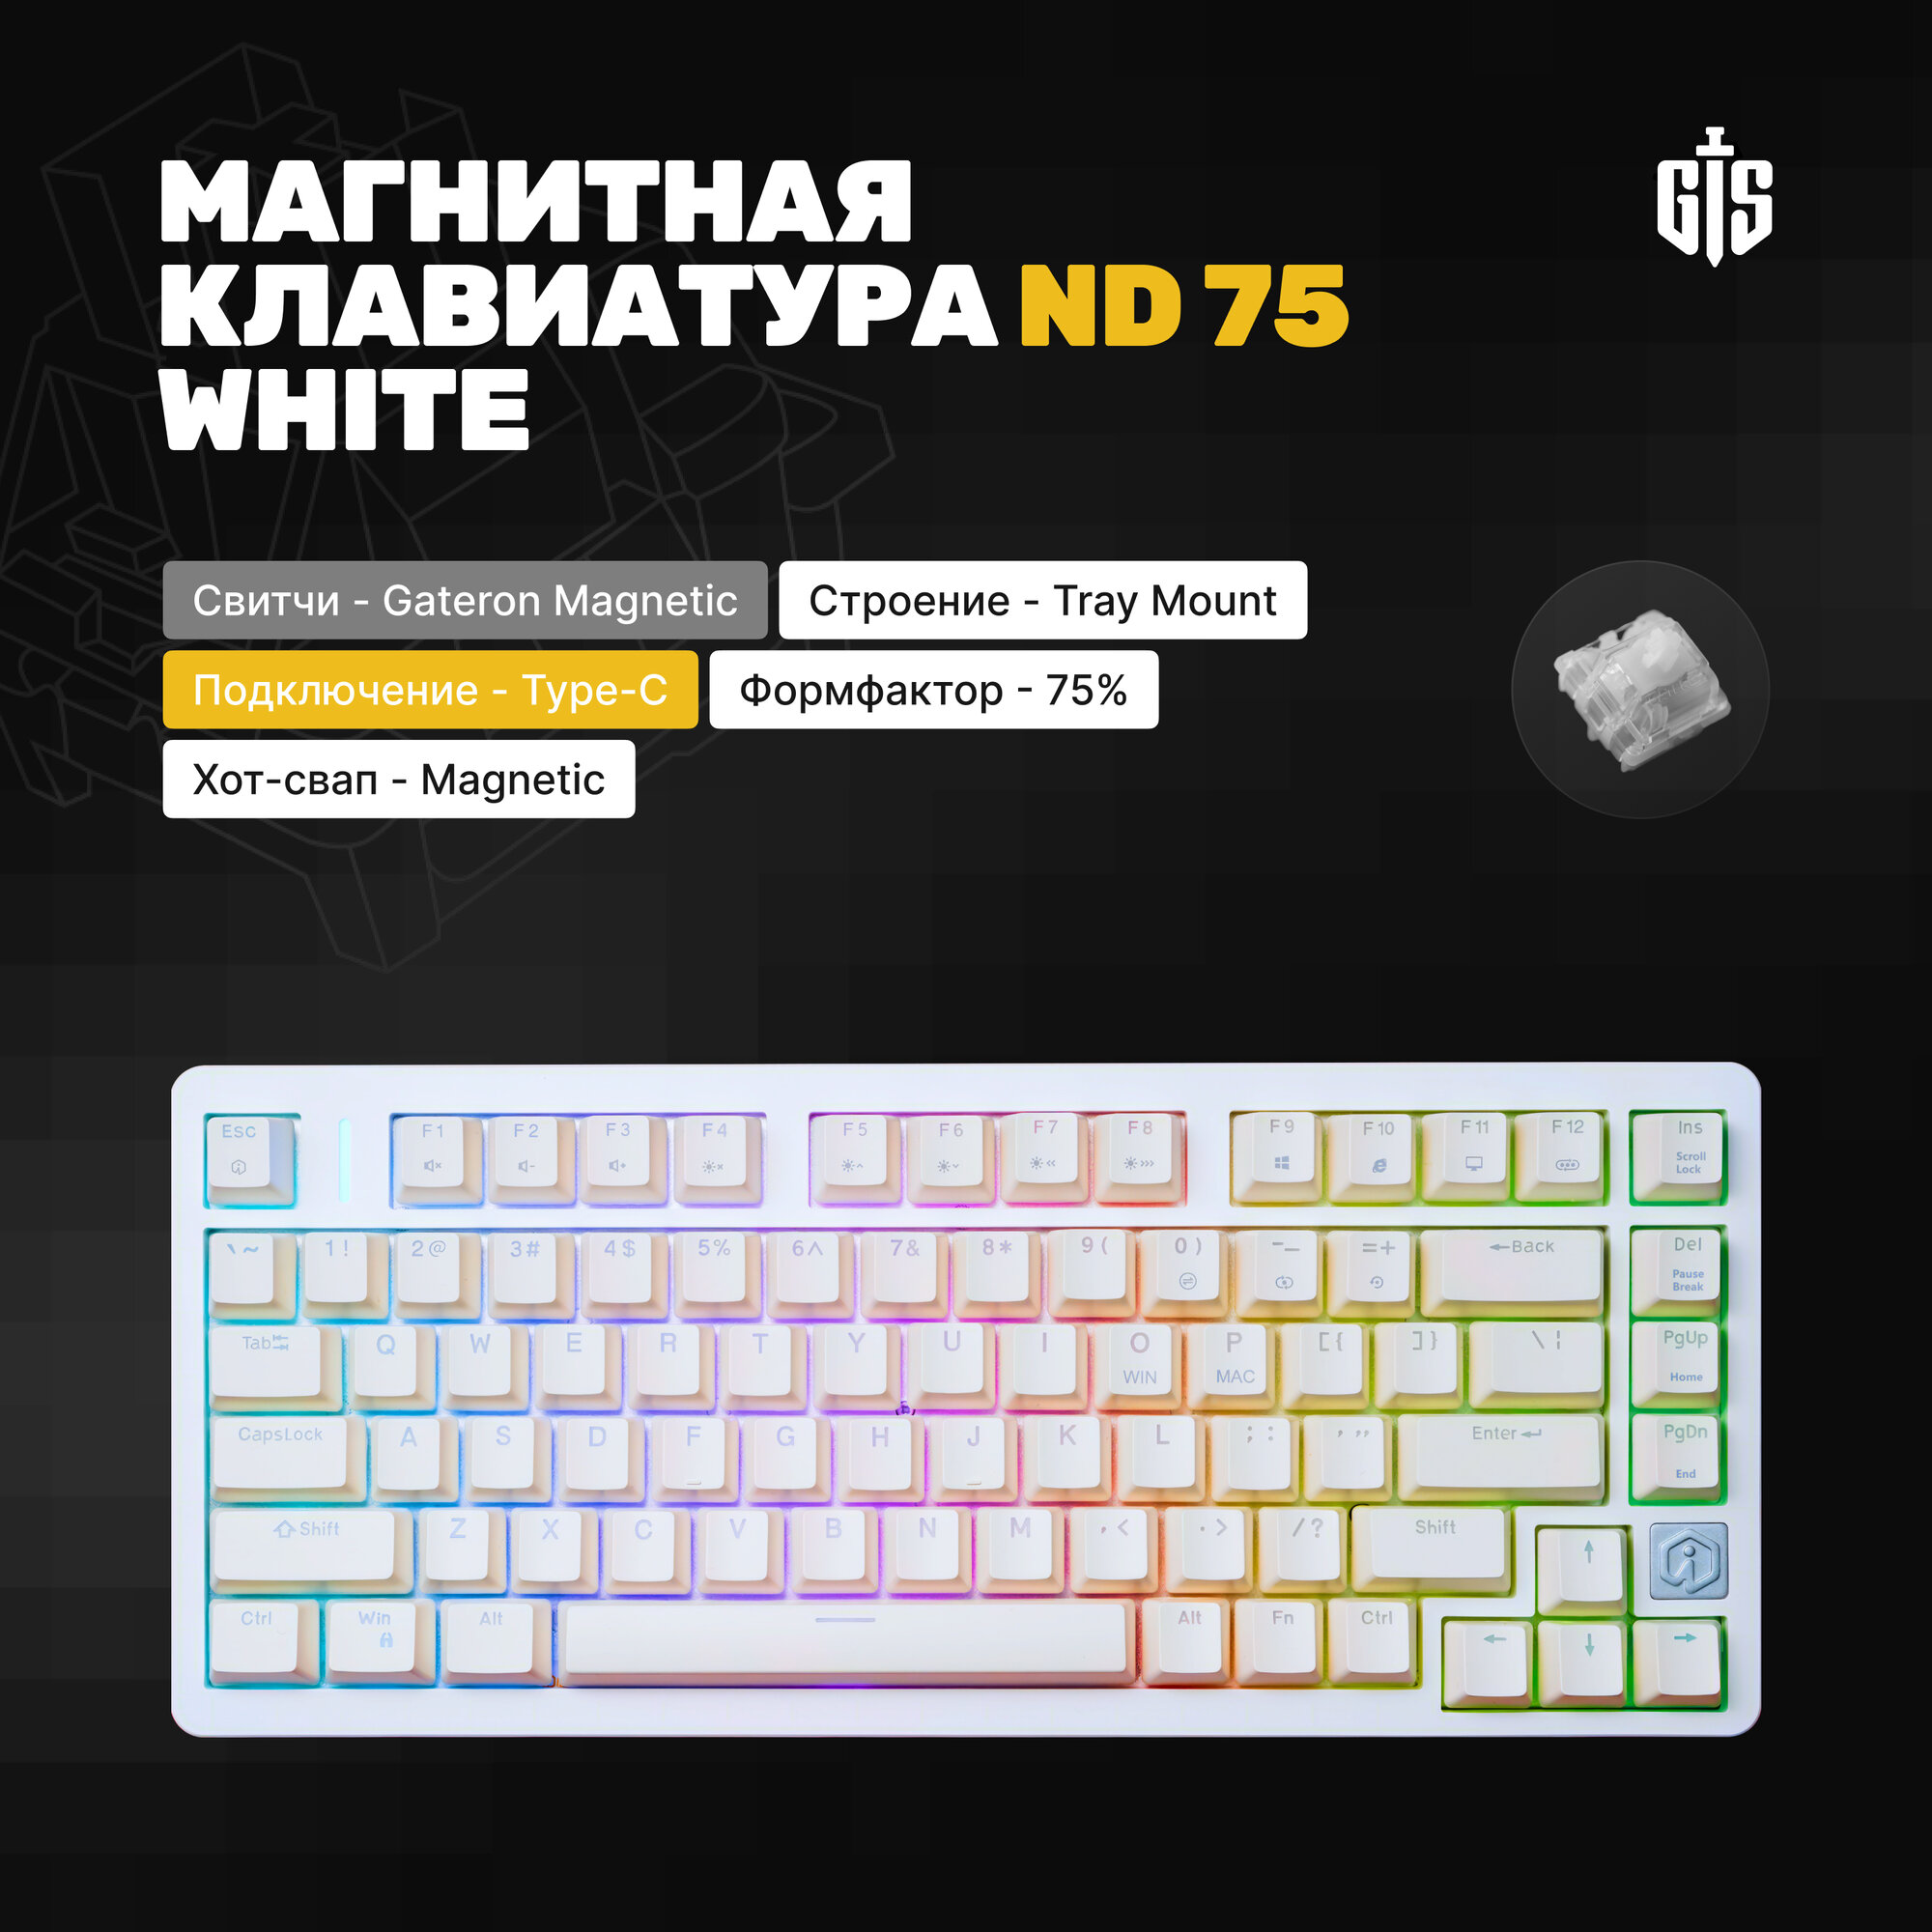 Клавиатура игровая проводная магнитная ND75 (White), белая, Gateron, 8000гц, Hotswap, ABS кейкапы, 75%, RGB